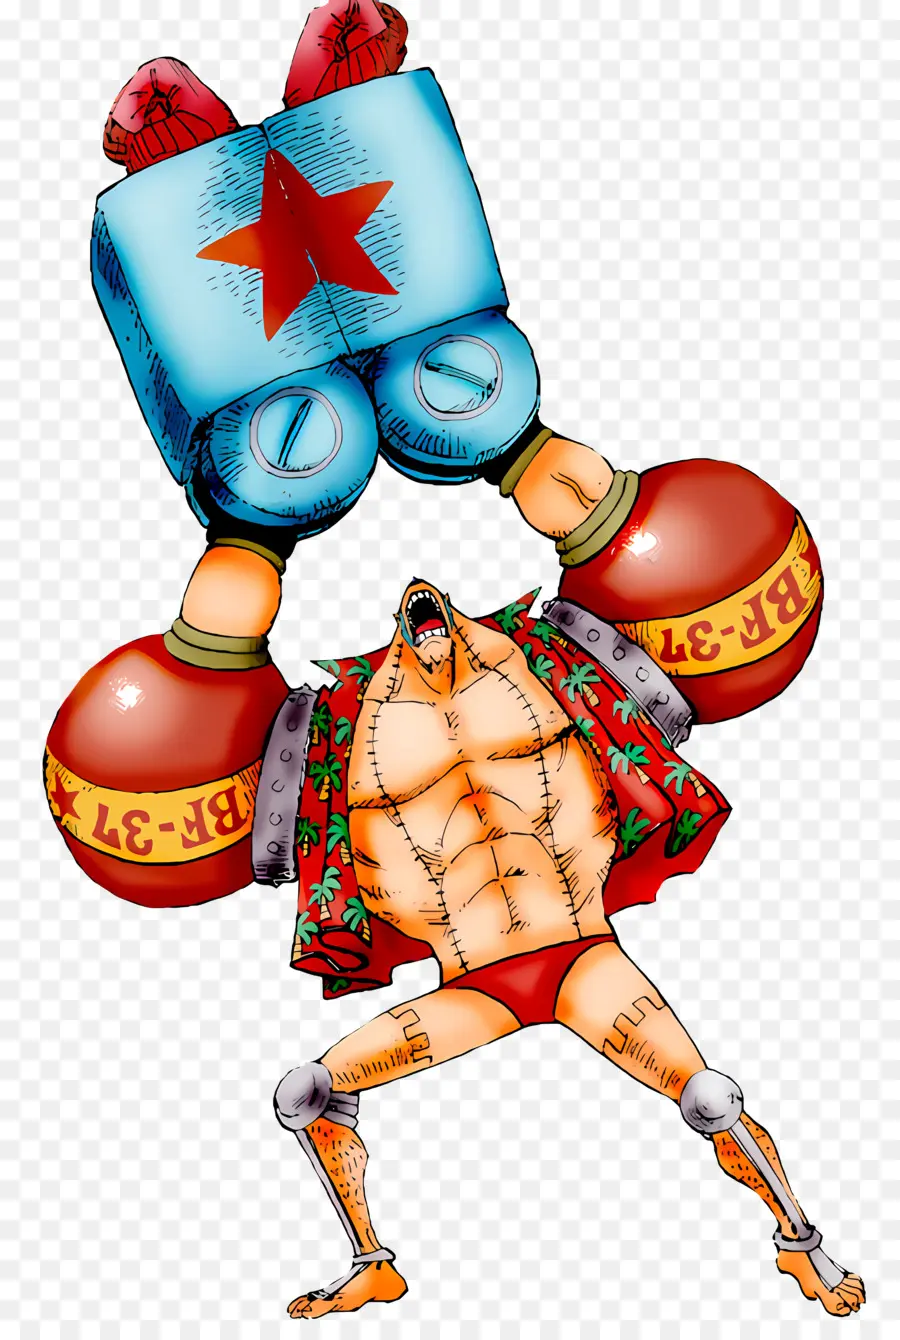 Cartoon Charakter Bodybuilder heben schweres Objekt rotes Hemd und blaue Shorts Stiefel - Cartoon Man hebt große Box mit Sternen